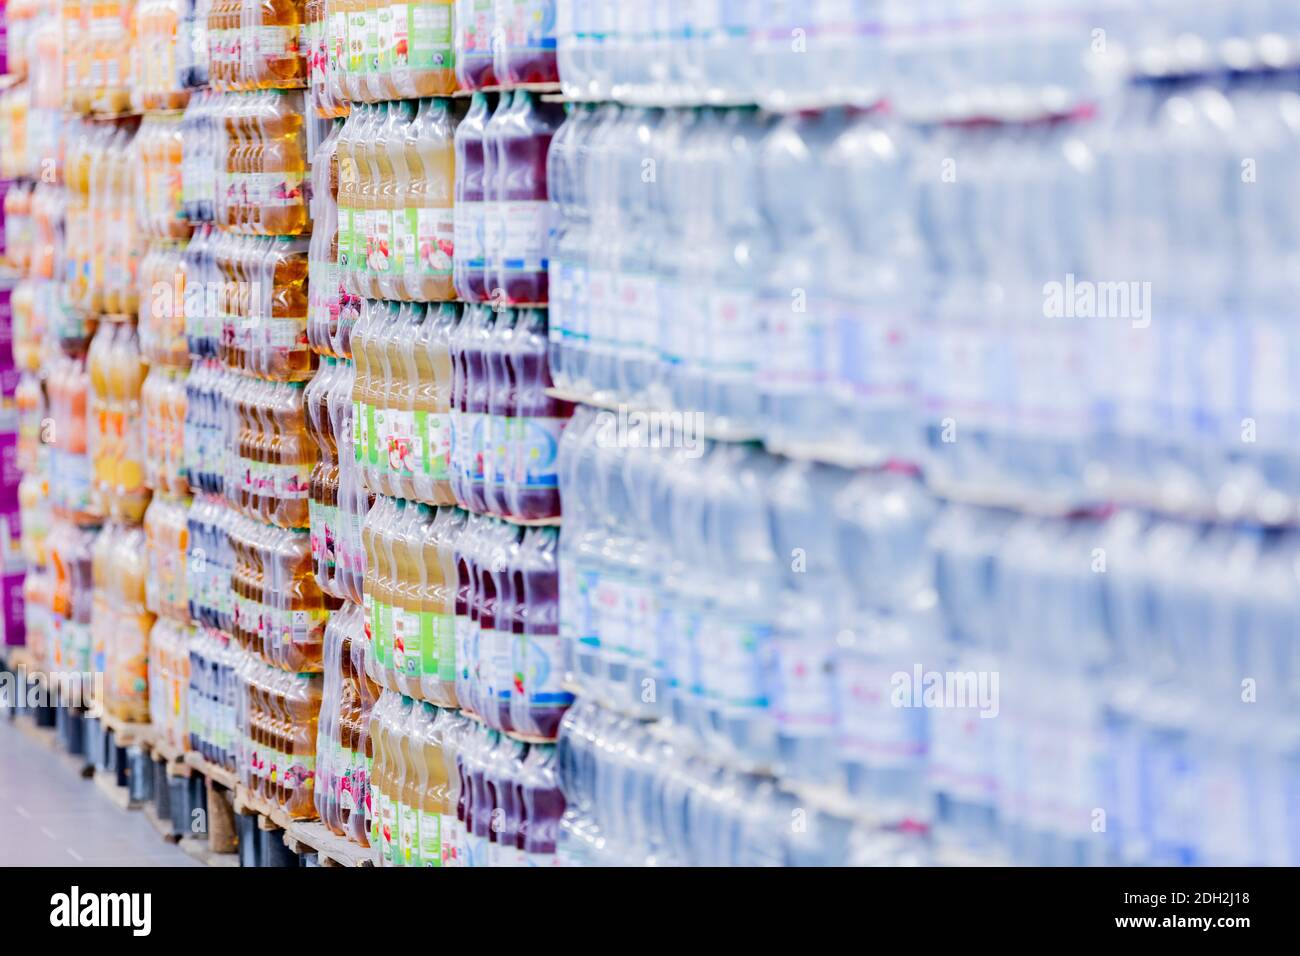 Essen, Alemania. 9 de diciembre de 2020. Las botellas de plástico  desechables están en palets en el "nuevo mercado más antiguo de Aldi".  Después de 101 años de comercio de alimentos en